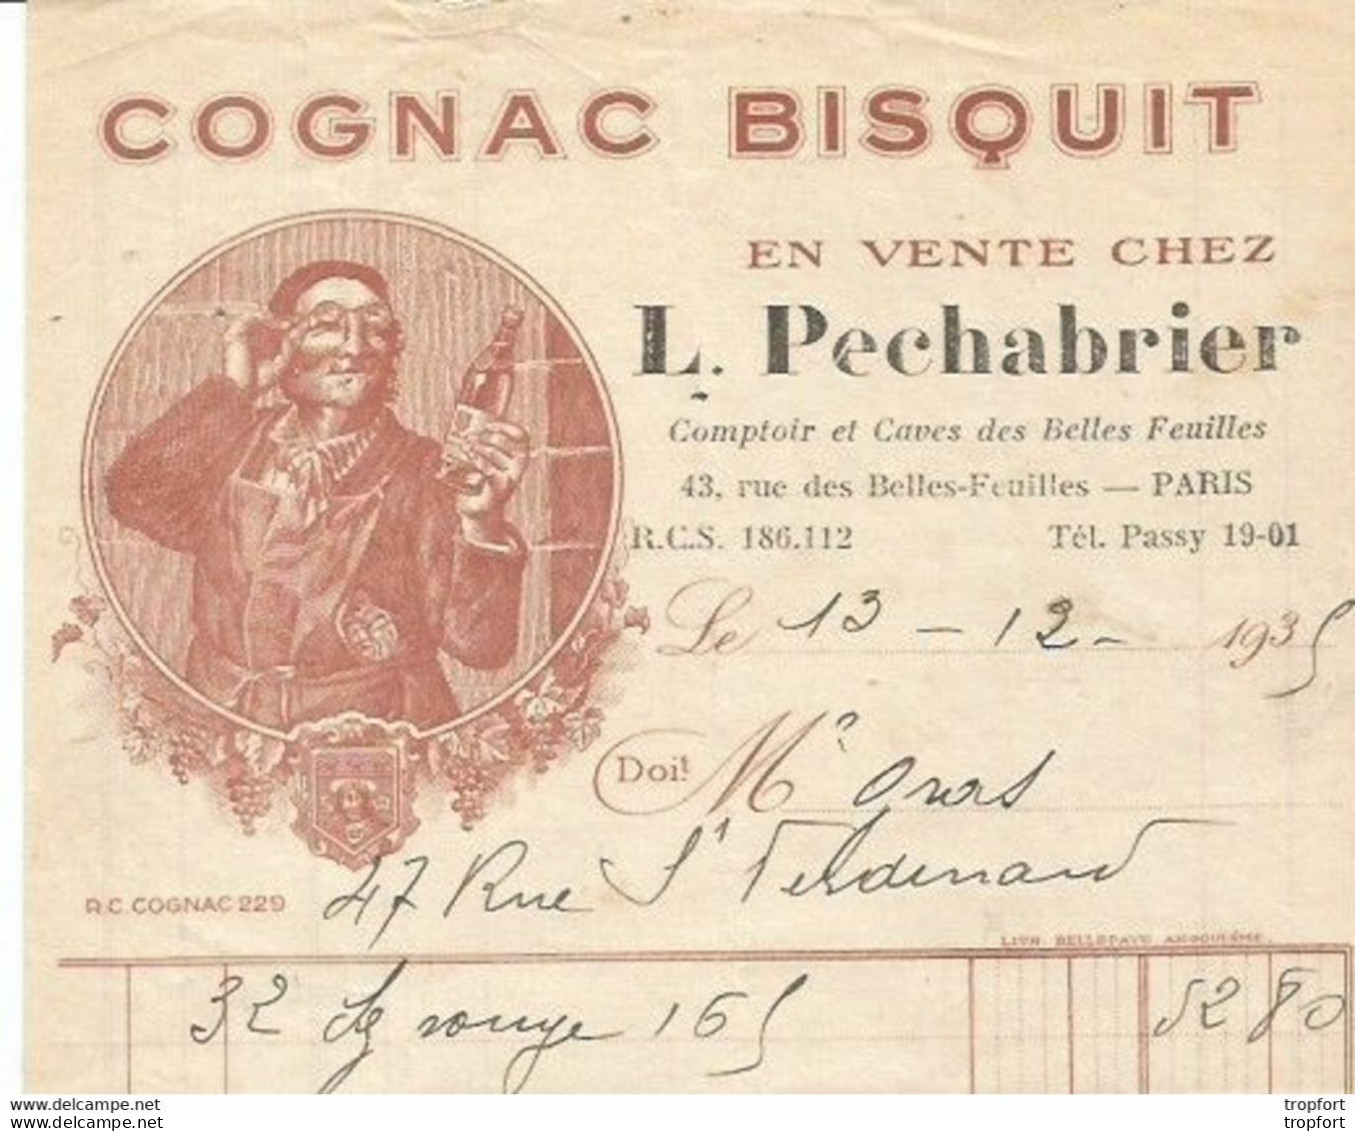 M11 Cpa / Old Invoice / Lettre Facture Ancienne 1935 COGNAC BISQUIT L Pechabrier PARIS - Ambachten